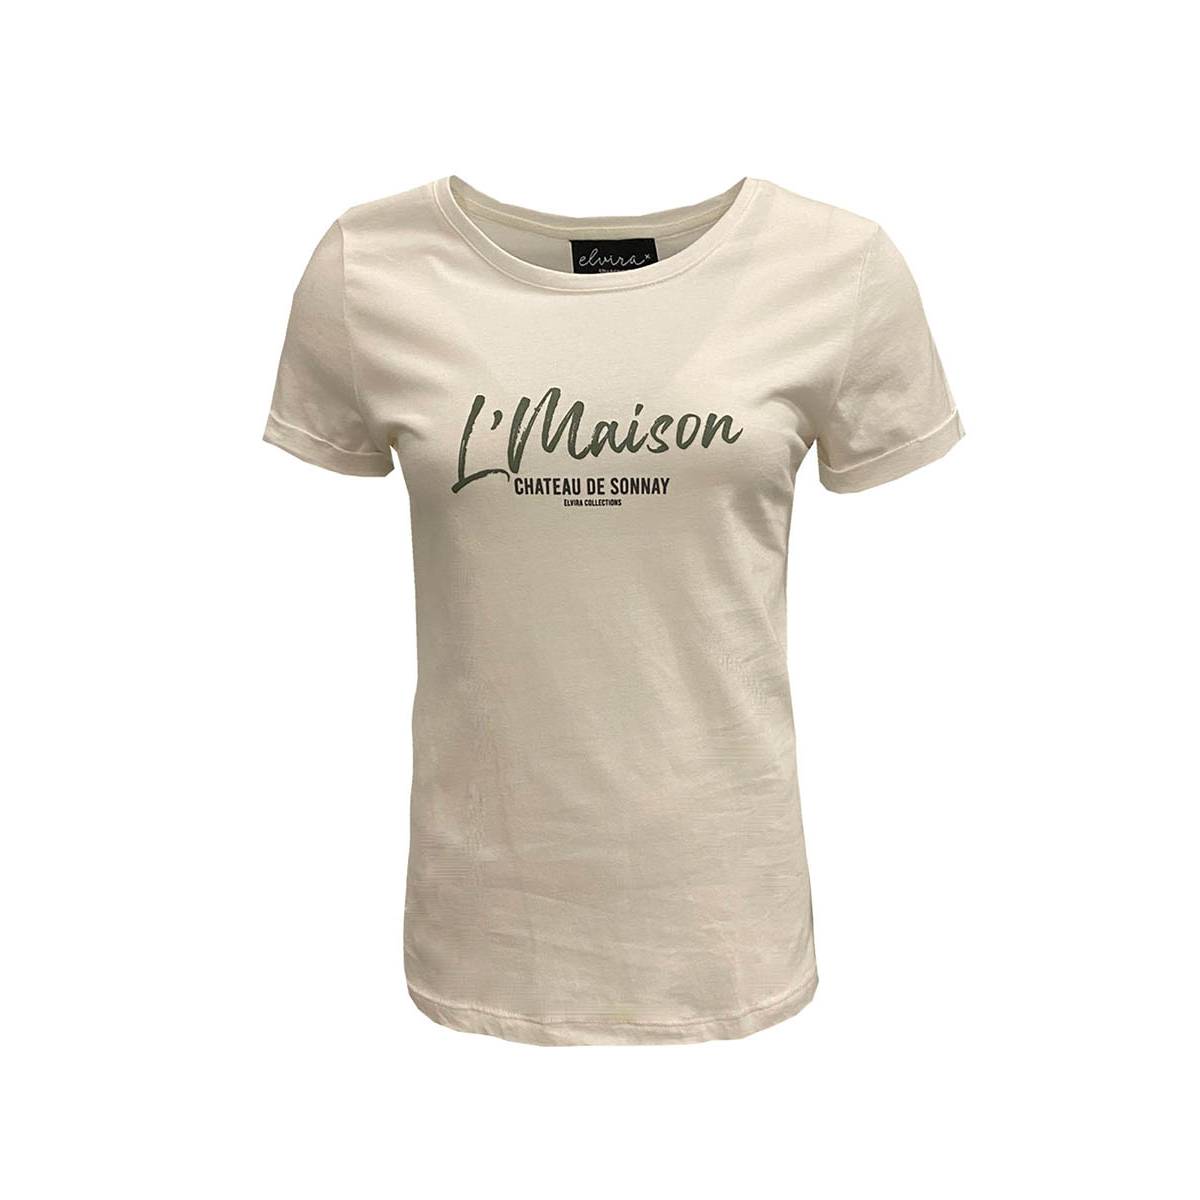 ELVIRA CASUALS E1 22-002 T-shirt Maison Wit